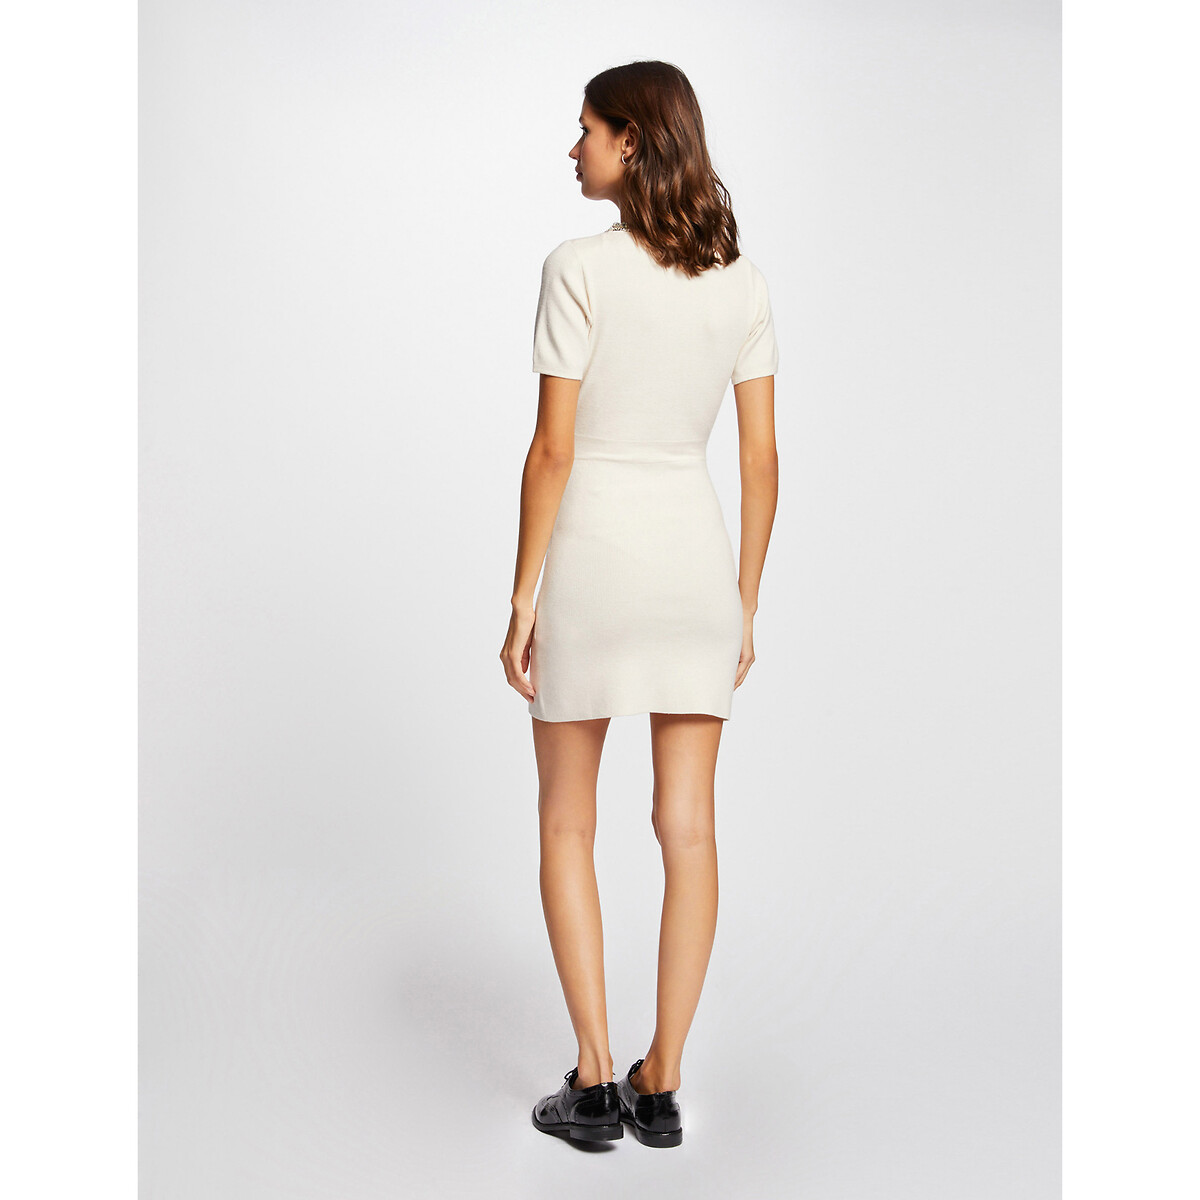 Платье-пуловер MORGAN Приталенное с короткими рукавами S белый, размер S - фото 2